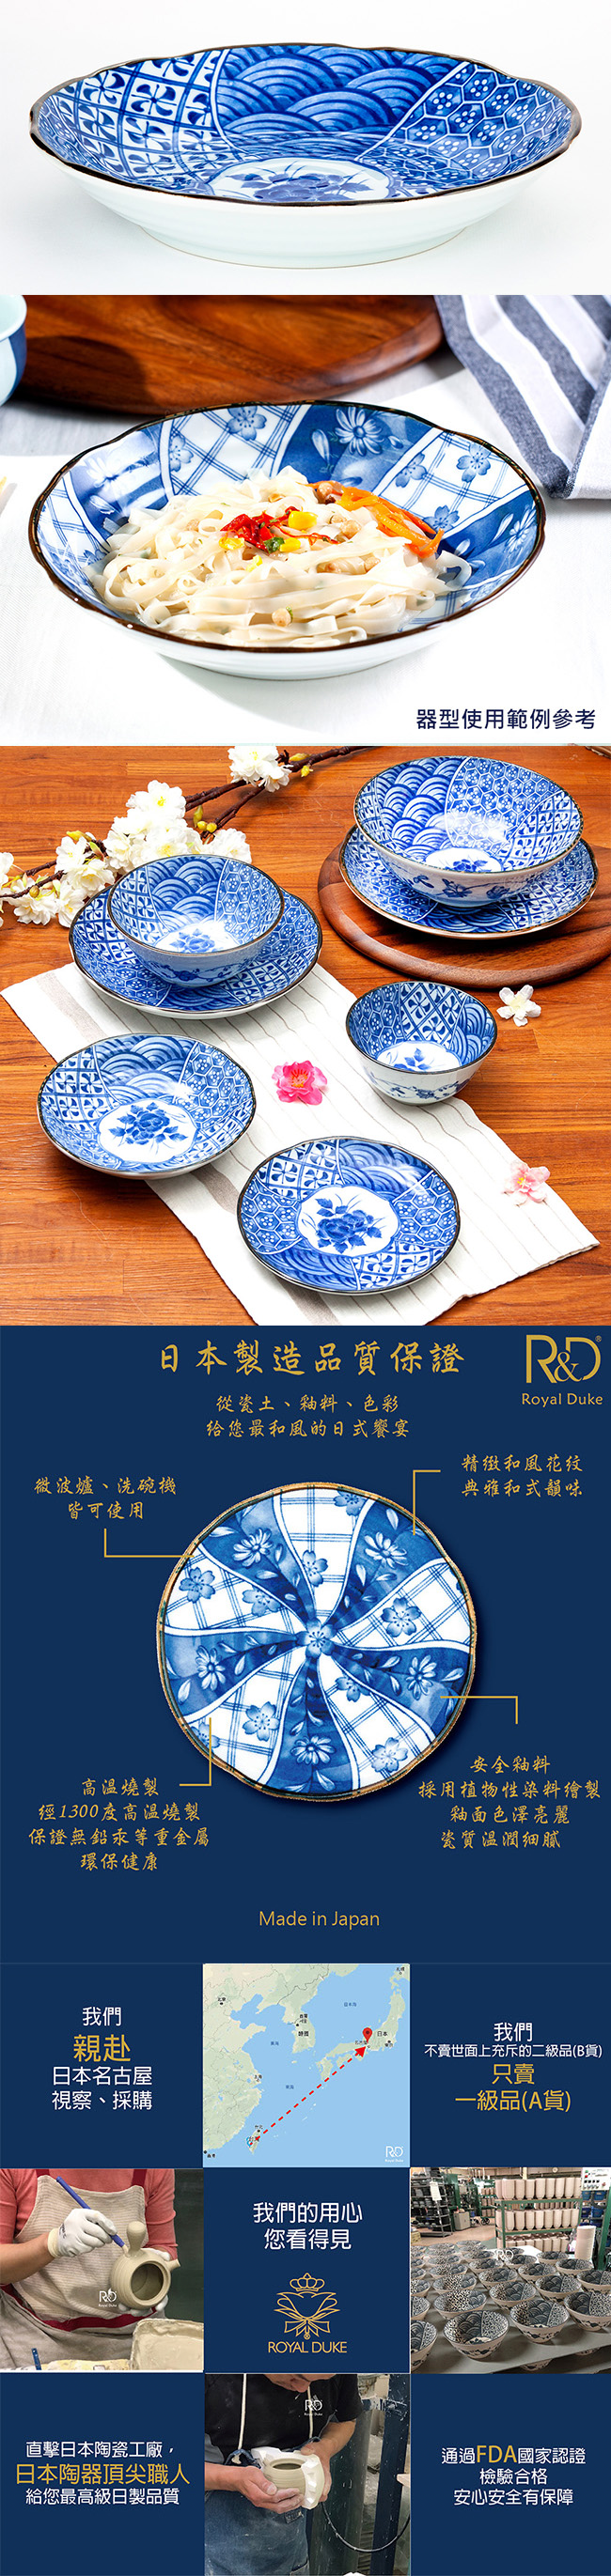 Royal Duke 日本製藍染深盤/餐盤/2入組-花祥瑞(日式和風)